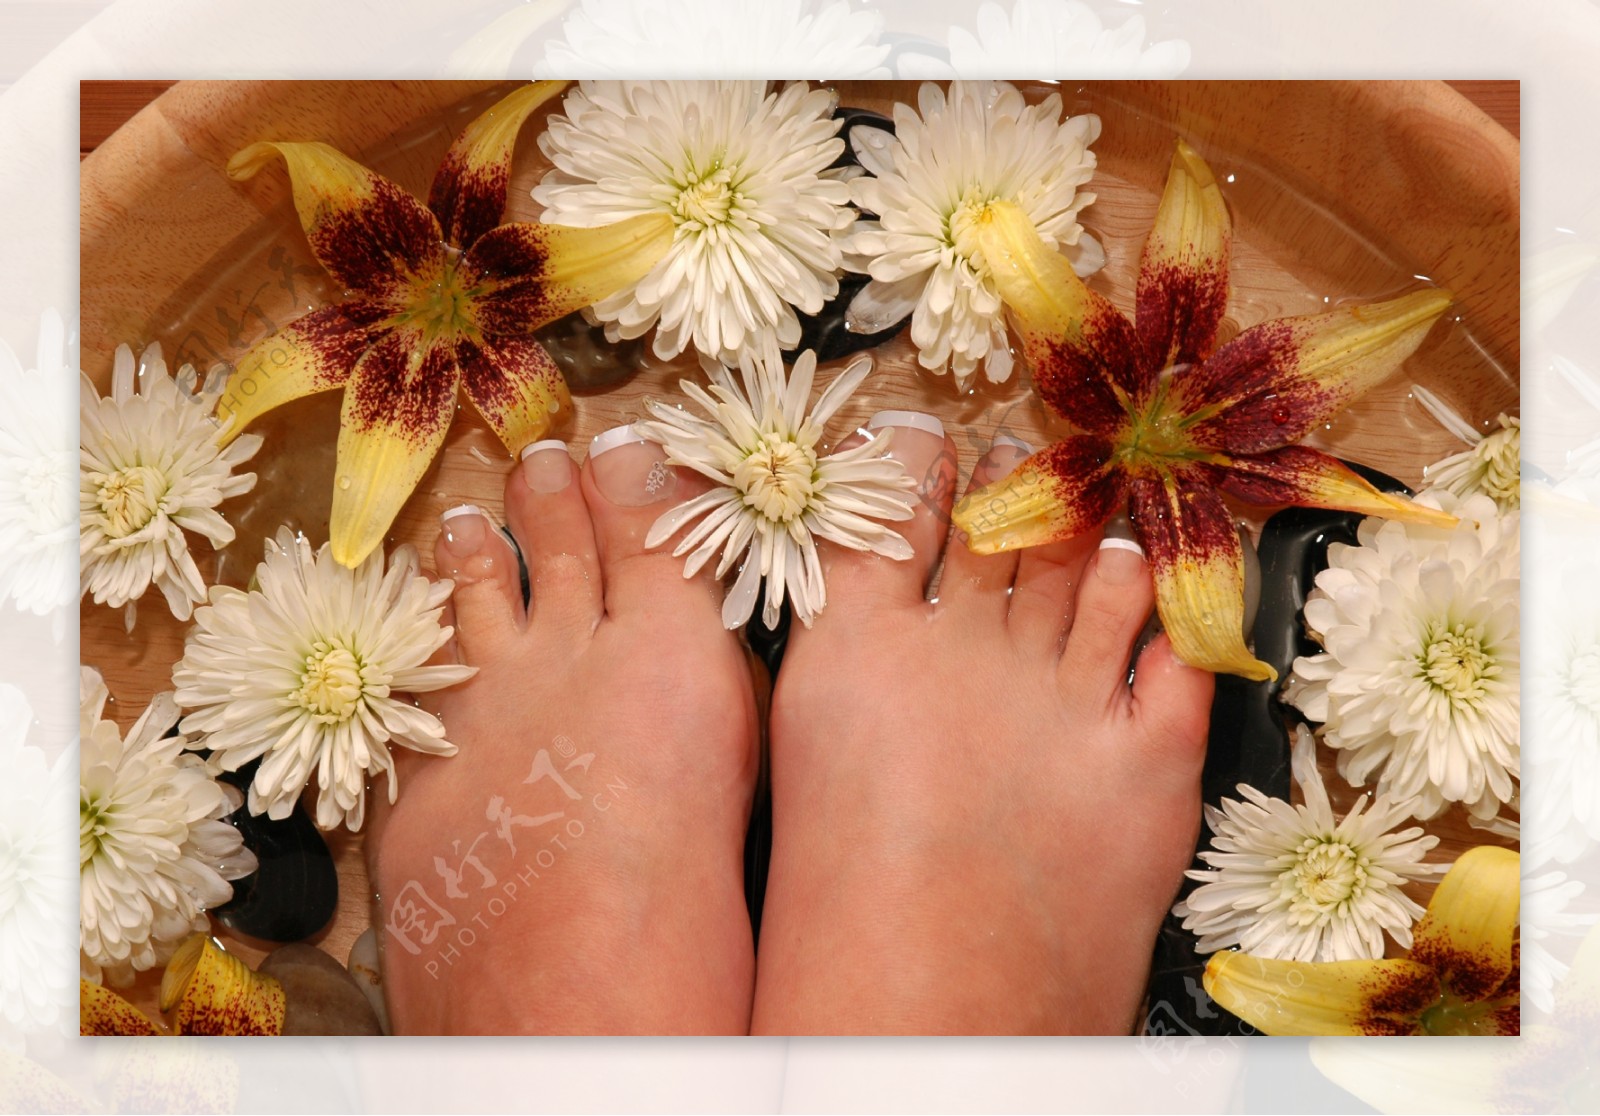 正在用花朵洗脚的双足图片